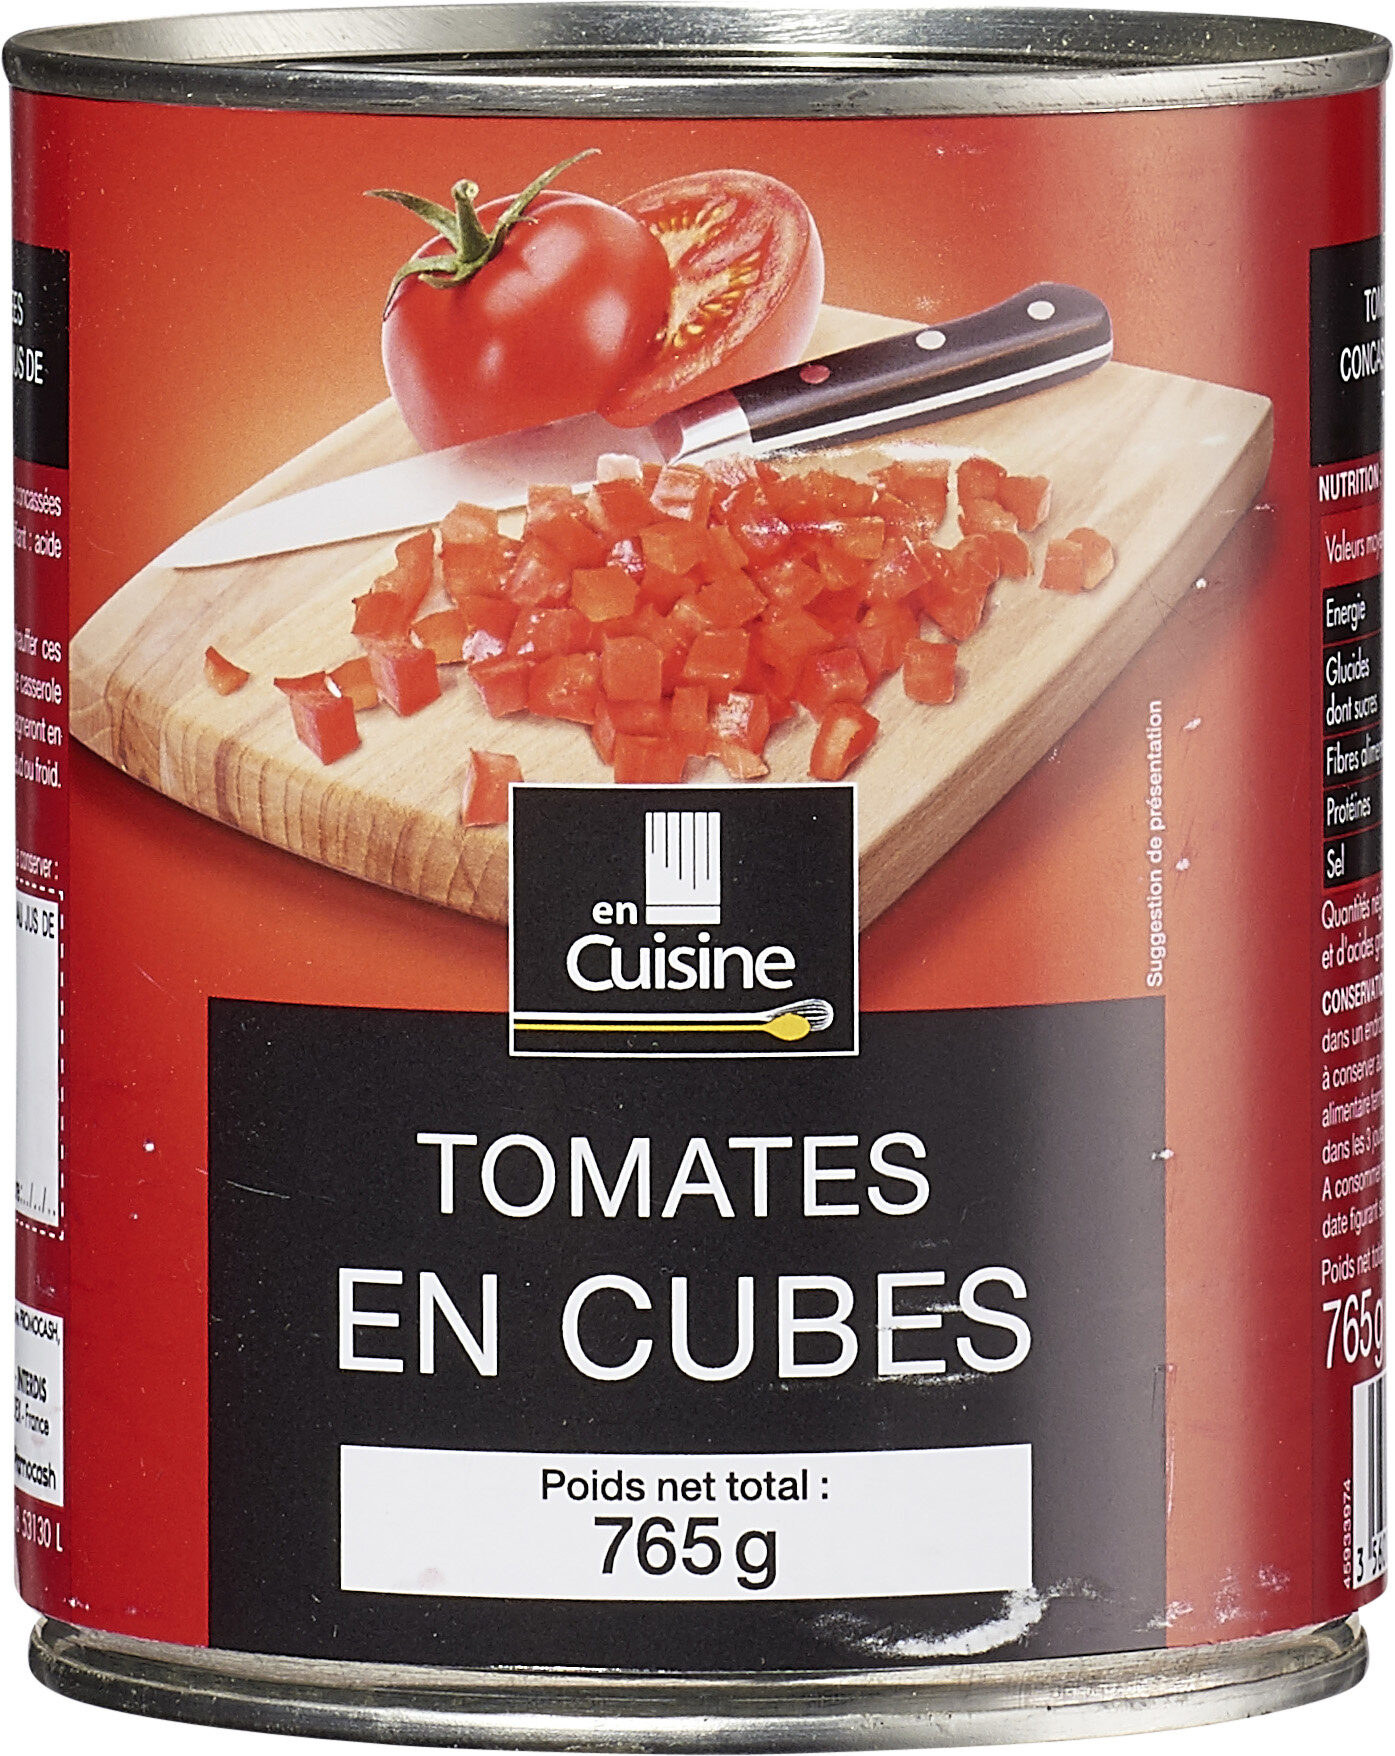 Pulpe de tomates en cubes au jus - Product - fr